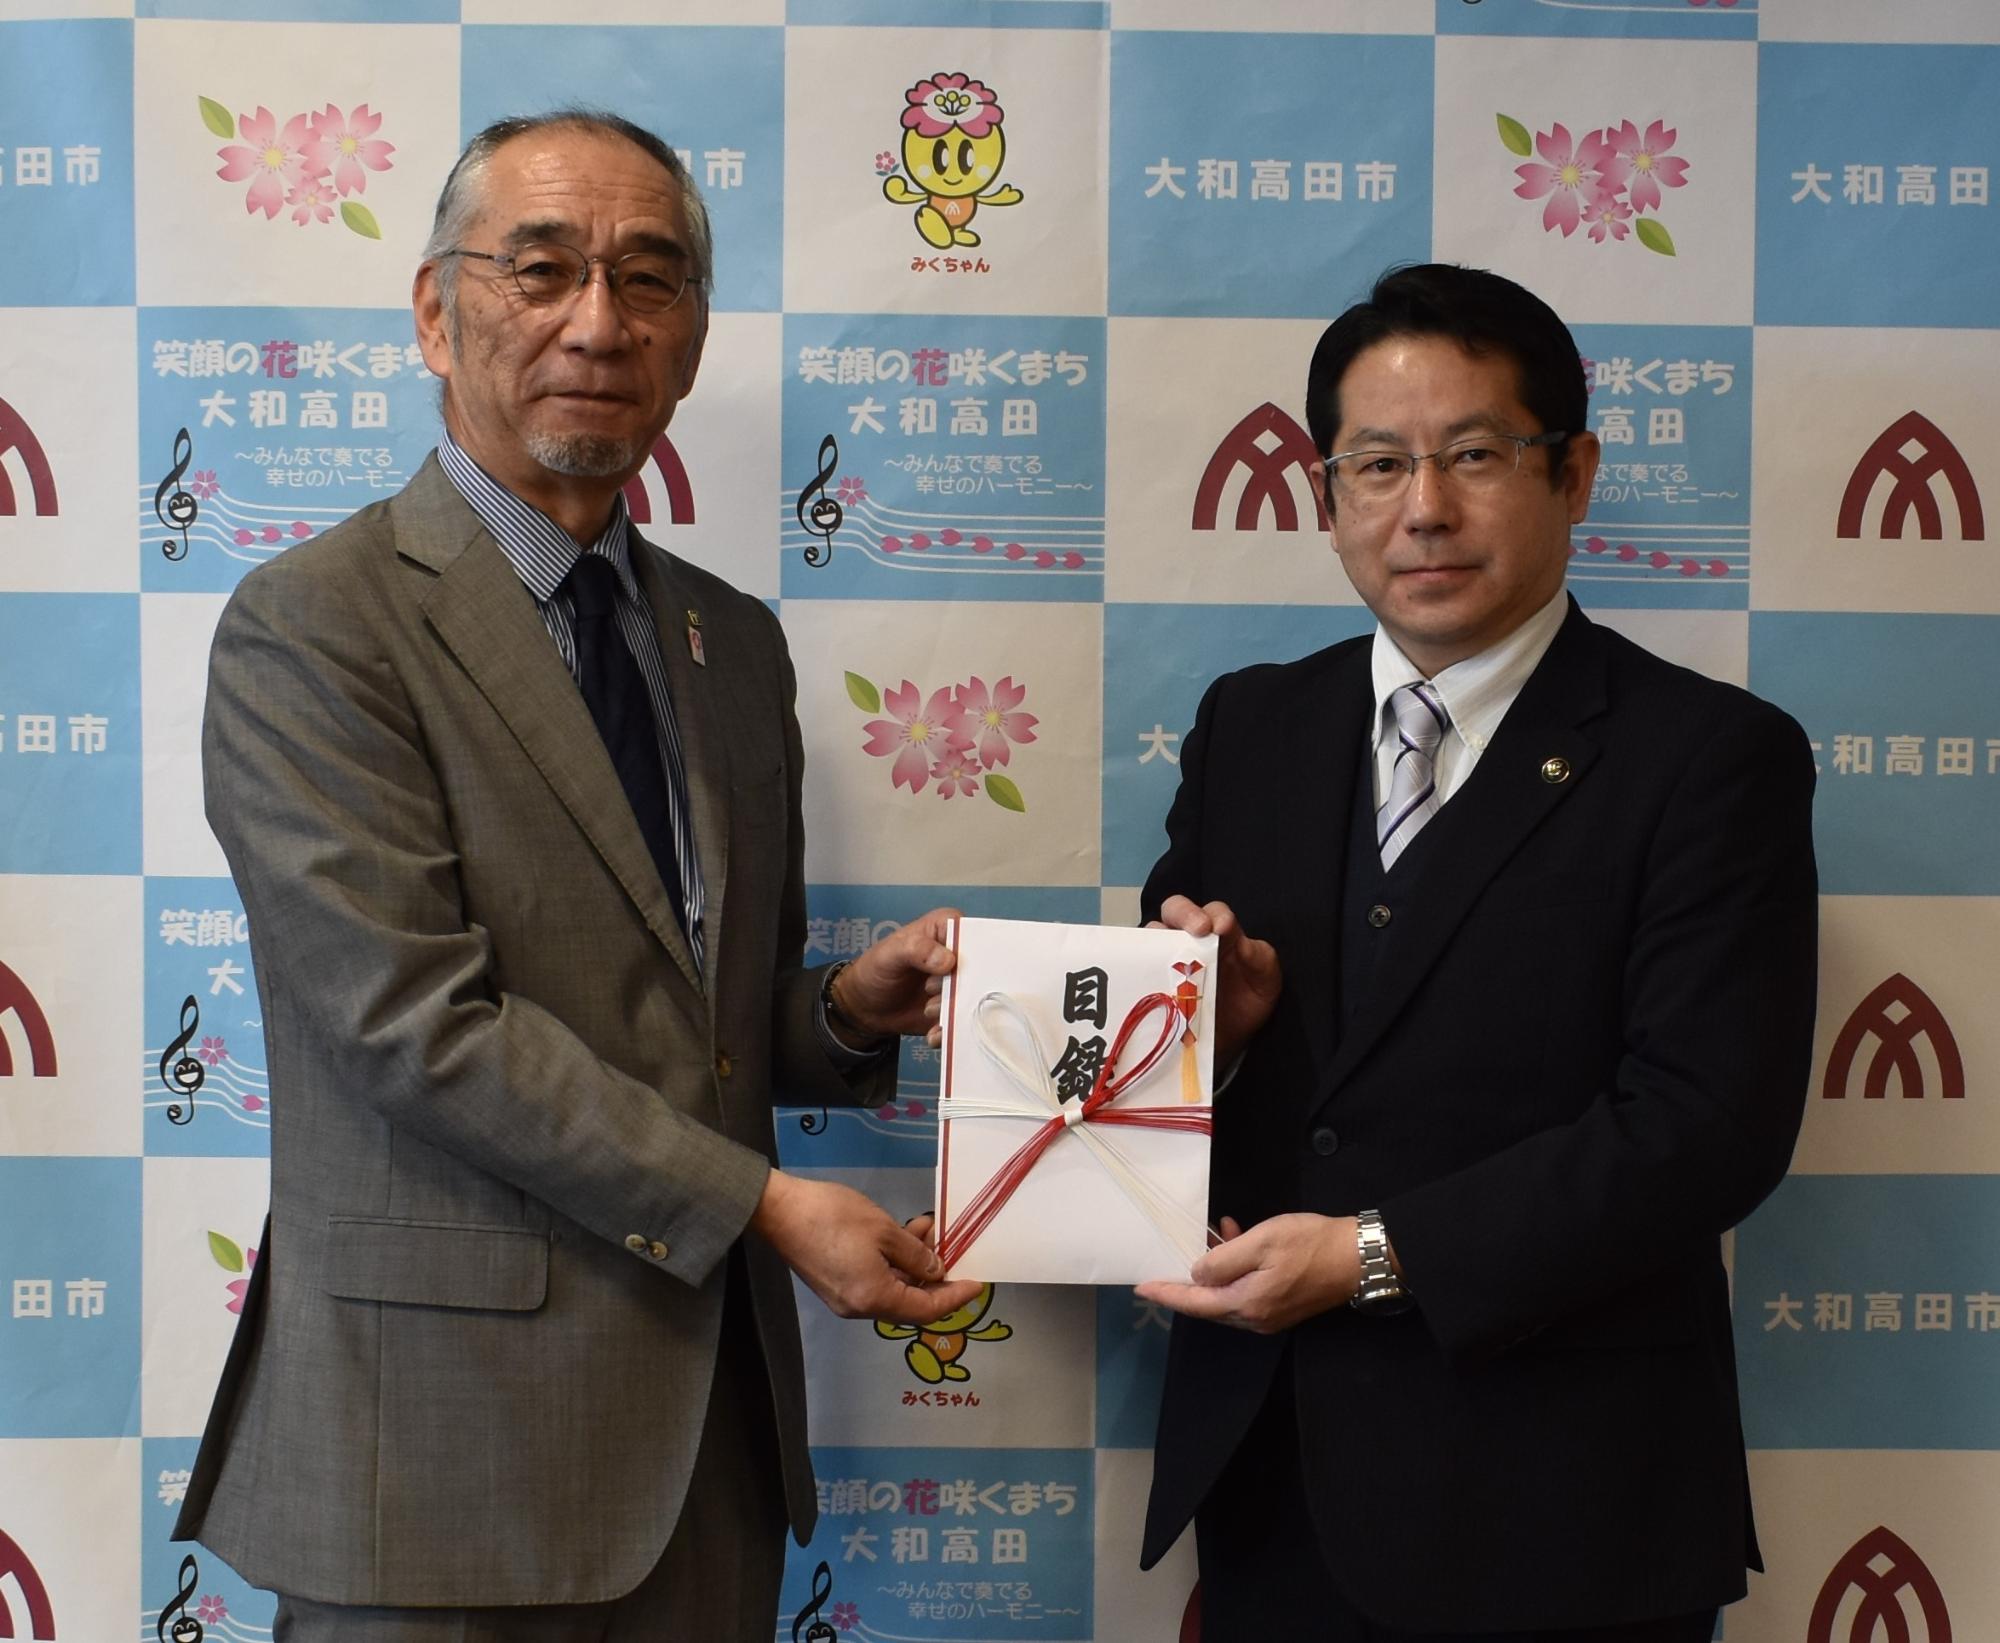 画面左側の高田鋼材工業株式会社の松村代表取締役社長から画面右側の堀内大和高田市長へ寄附金目録を贈呈する。